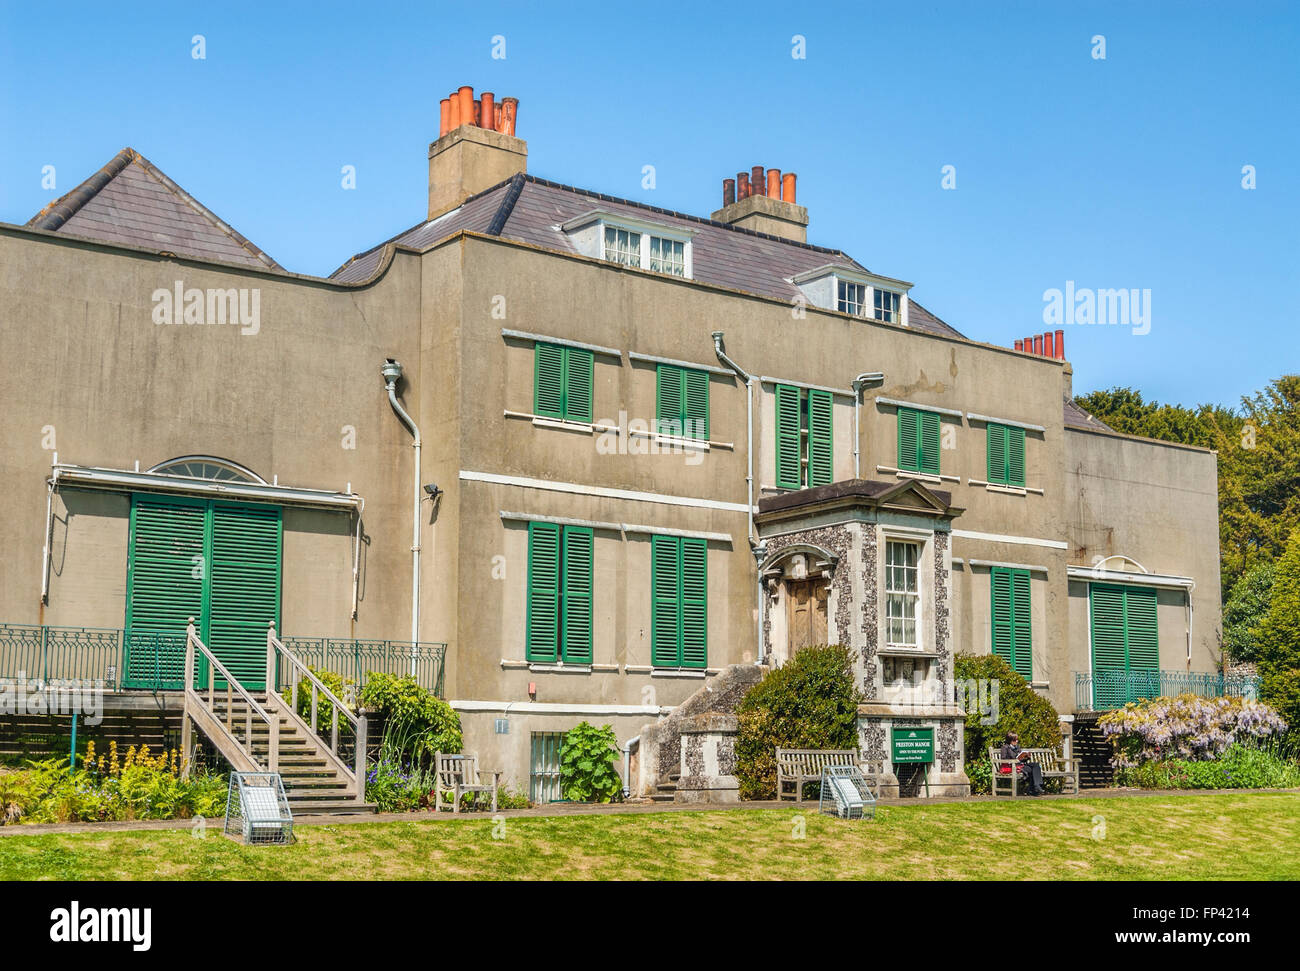 Preston Manor, dimora storica del XVII secolo, Brighton, East Sussex, Inghilterra Foto Stock